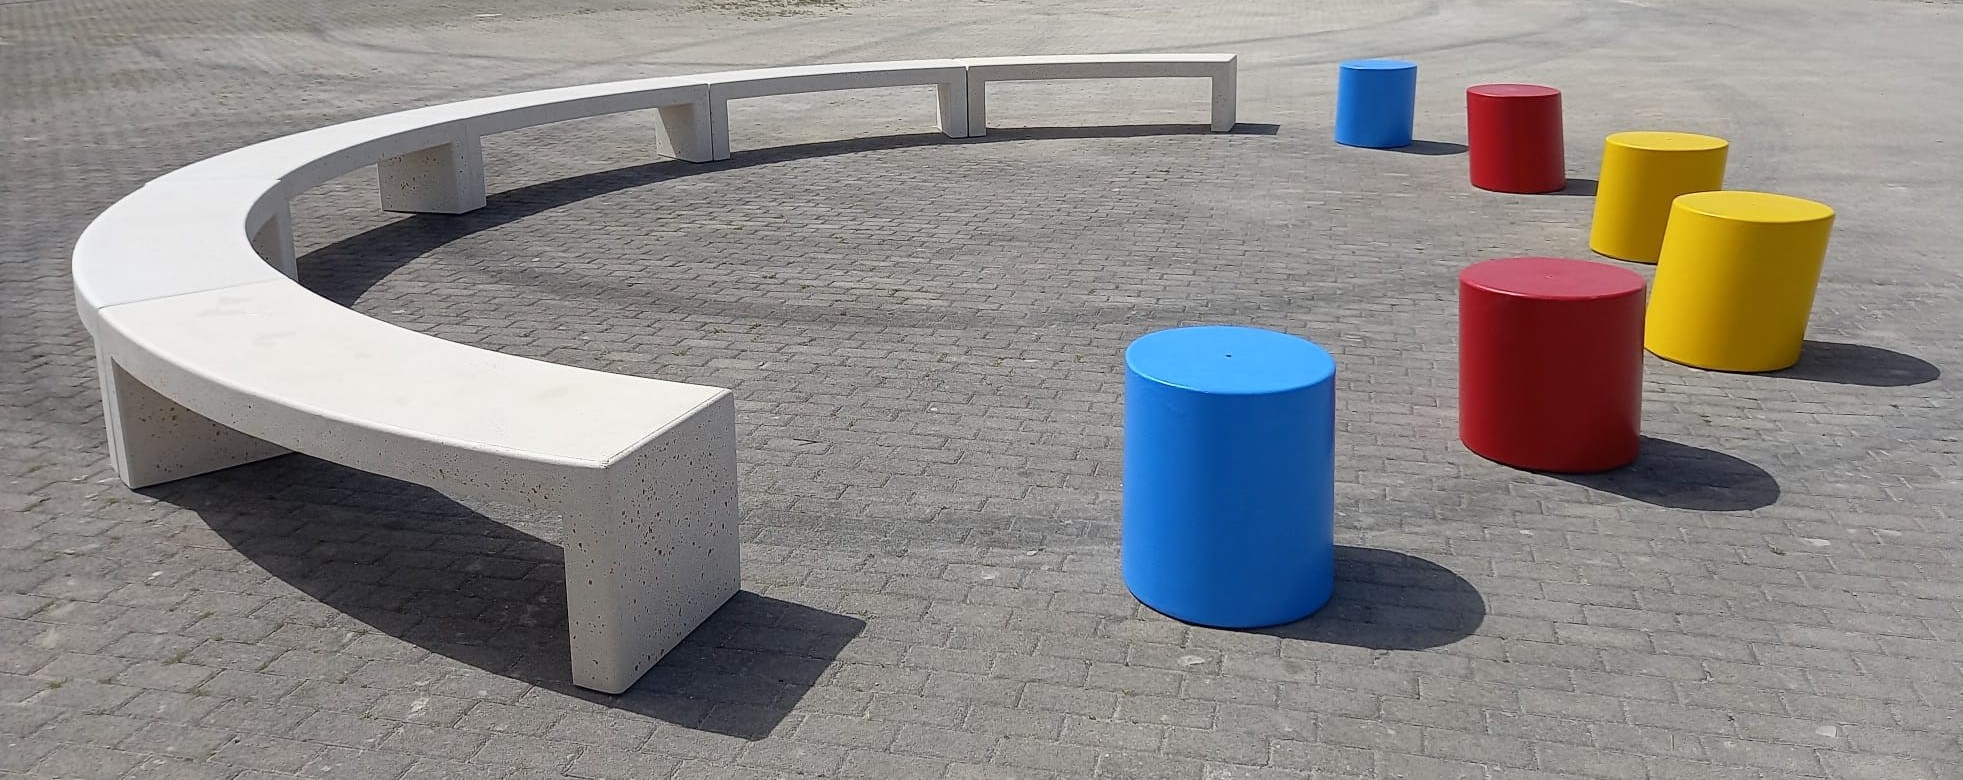 Composizione panche semicircolari in cemento Modus e cilindri pouff Slitt colorati ideali per parchi gioco